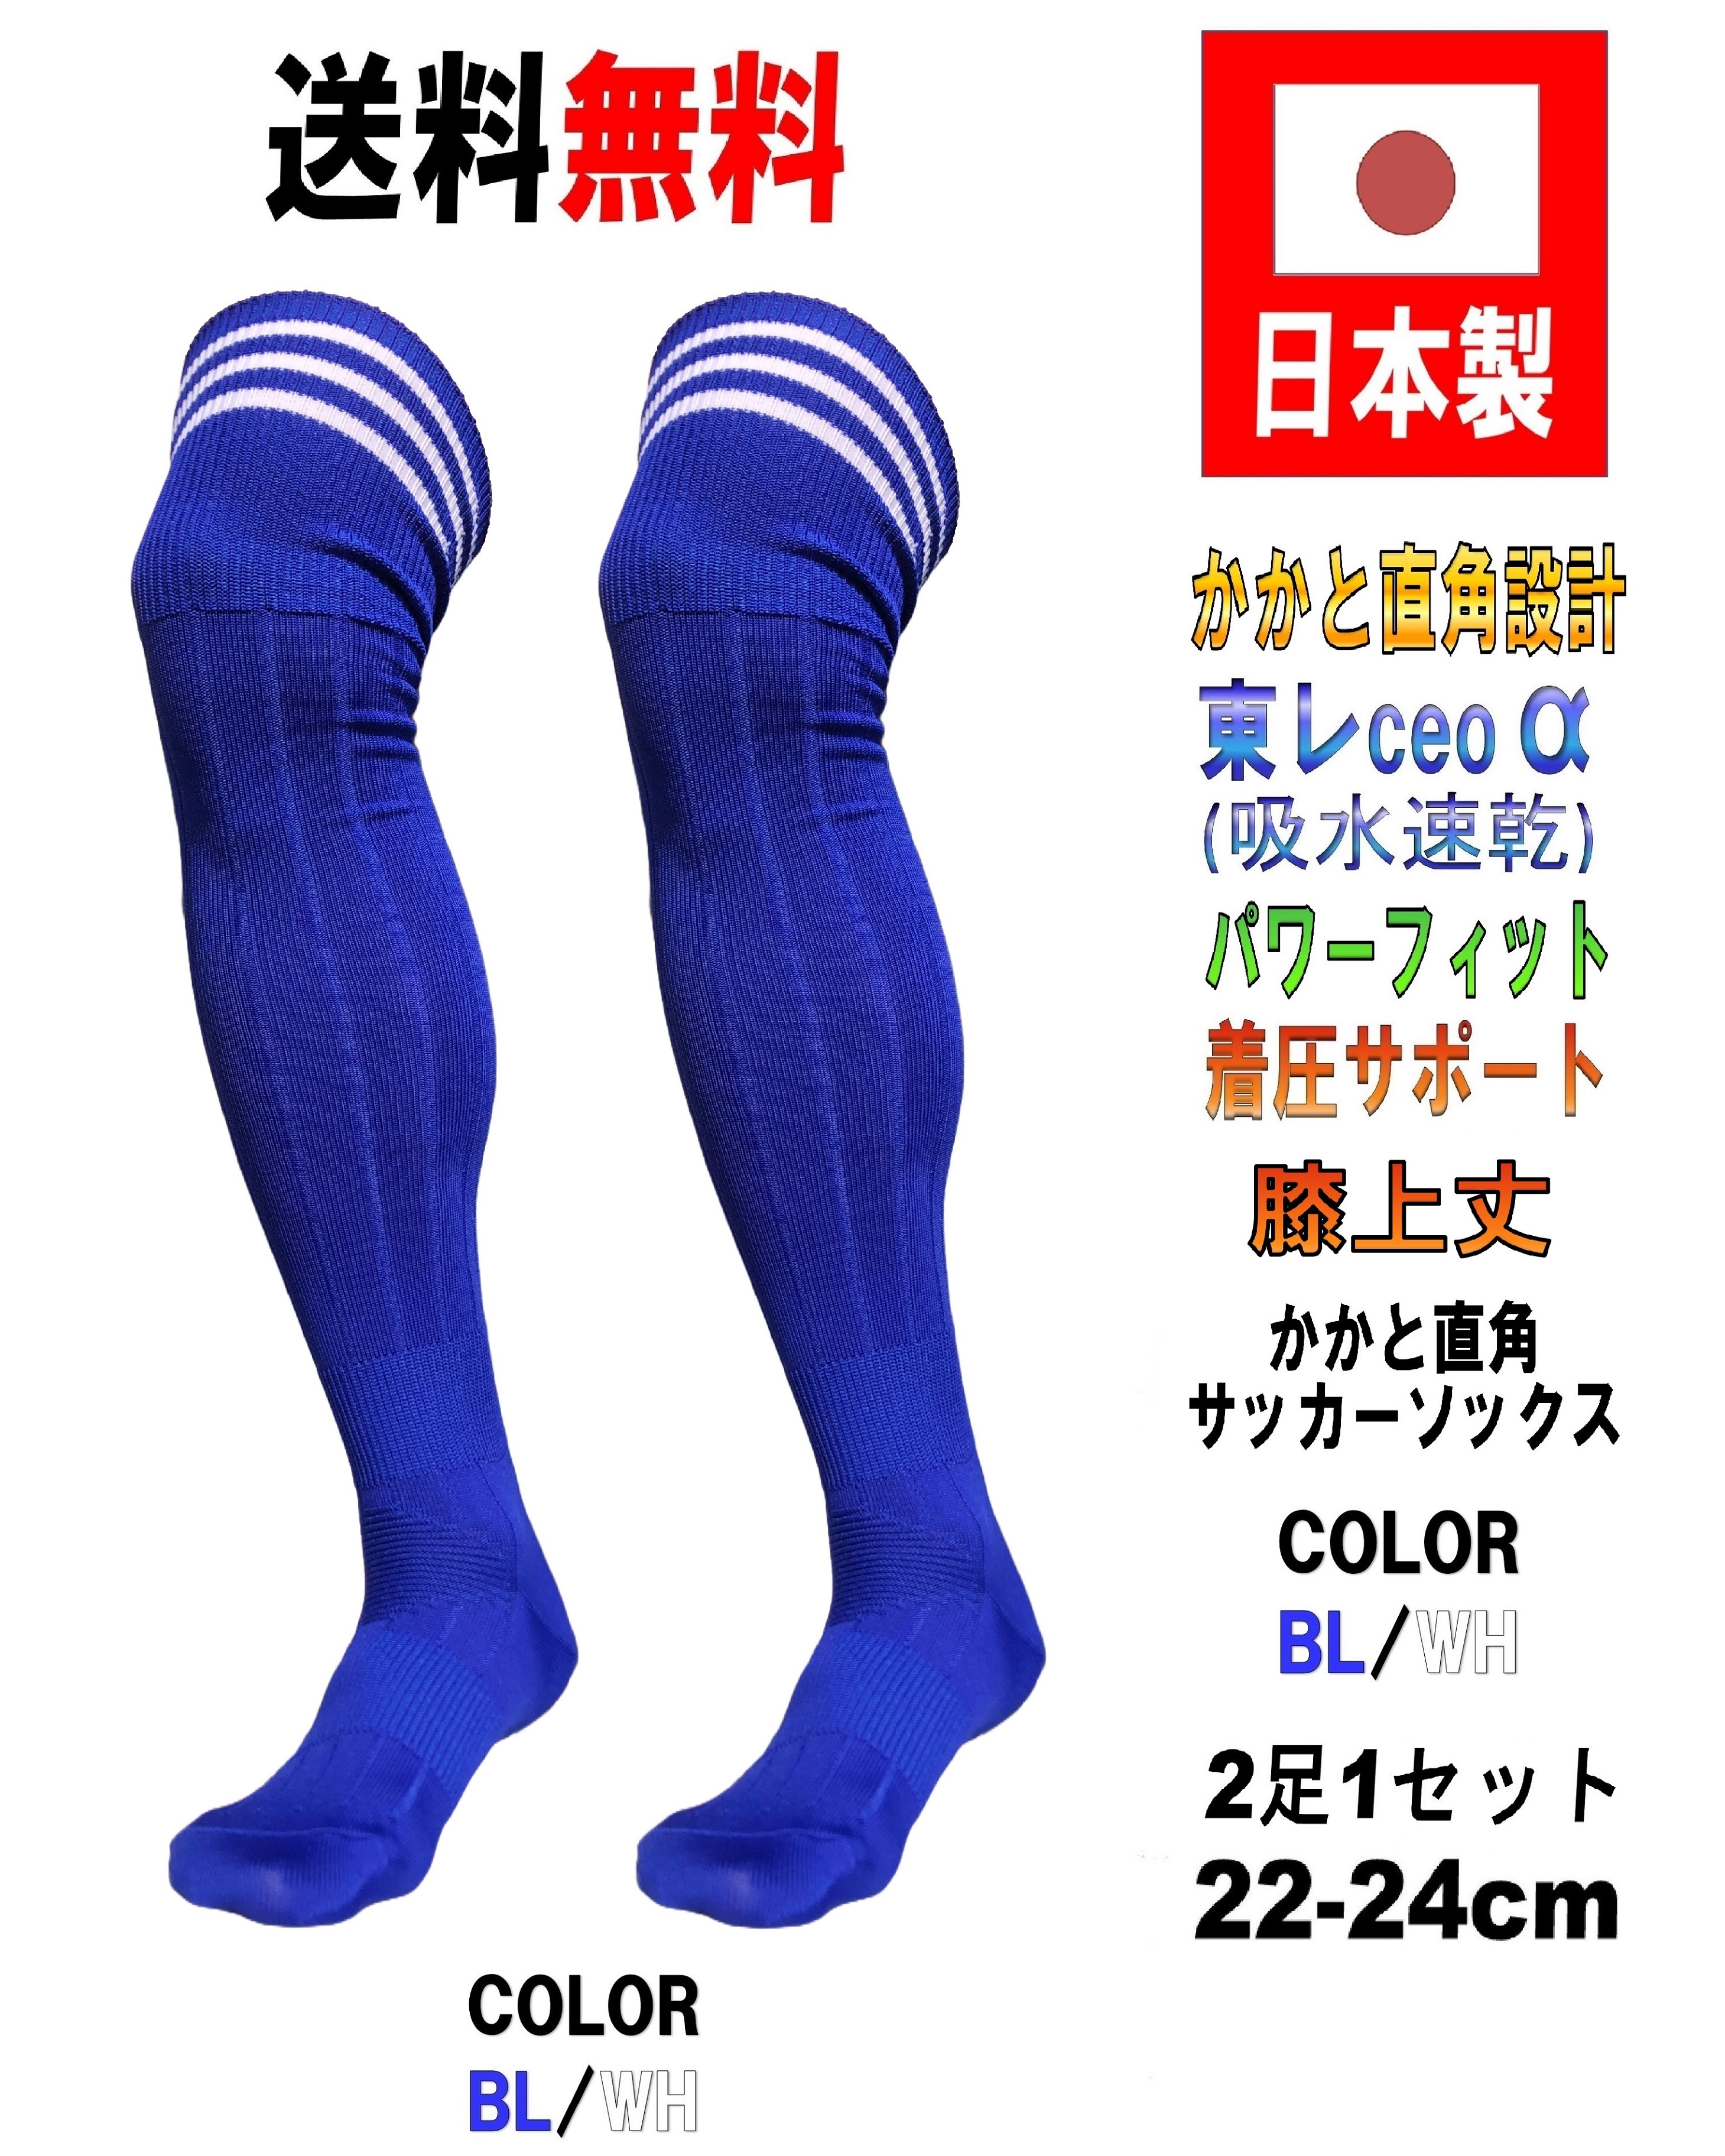 日本製 サッカーソックス BL/WH 2足セット 3サイズ 膝上丈